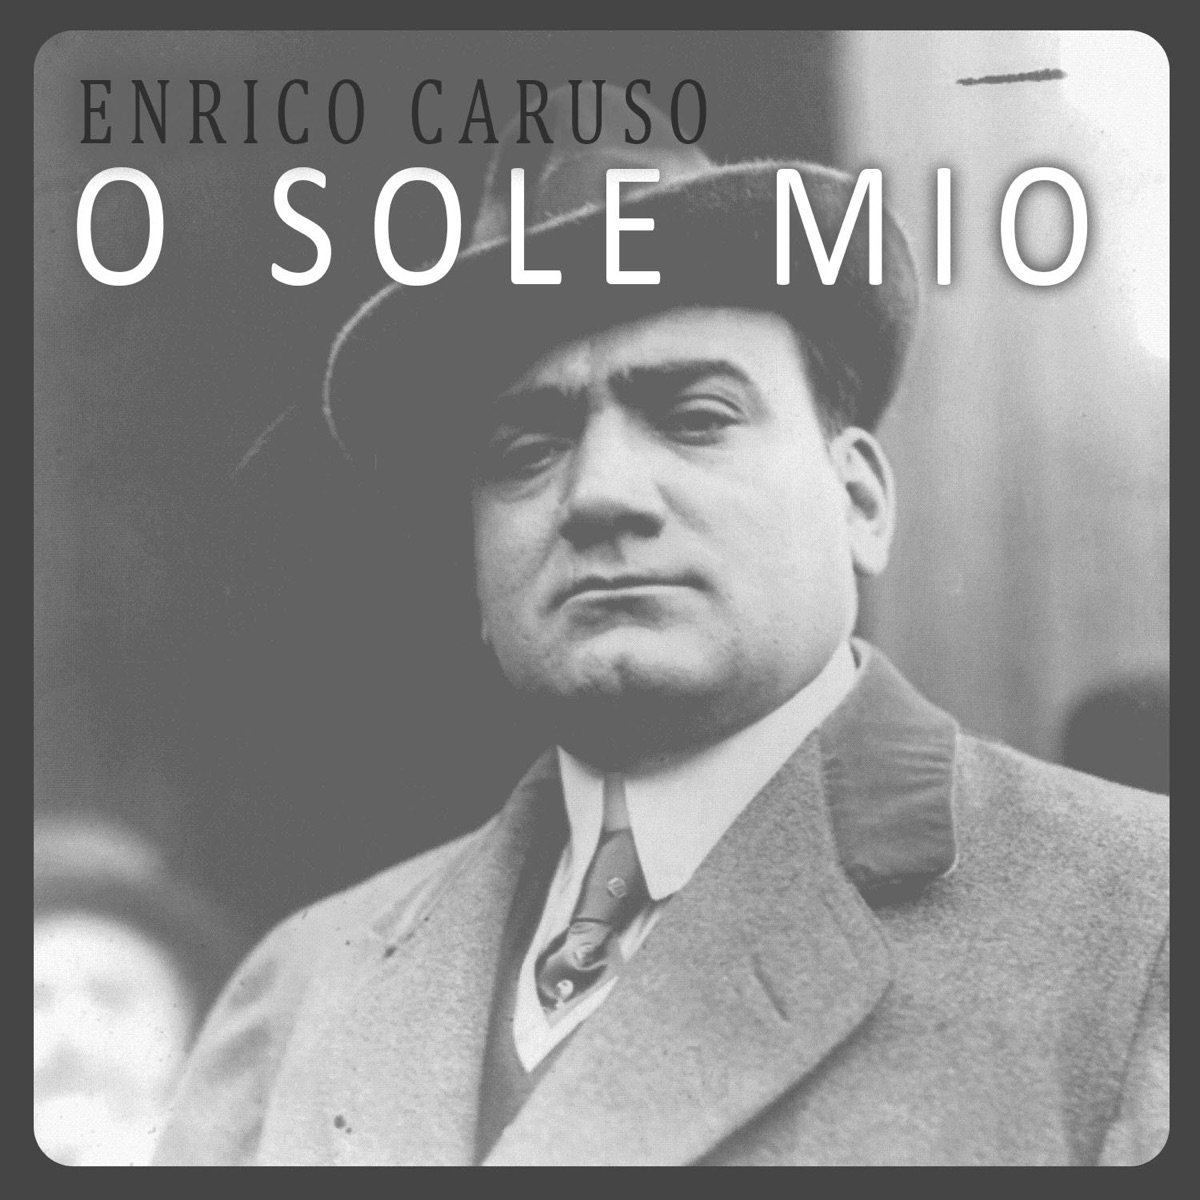 O Sole Mio - Single - Album by Enrico Caruso - Apple Music